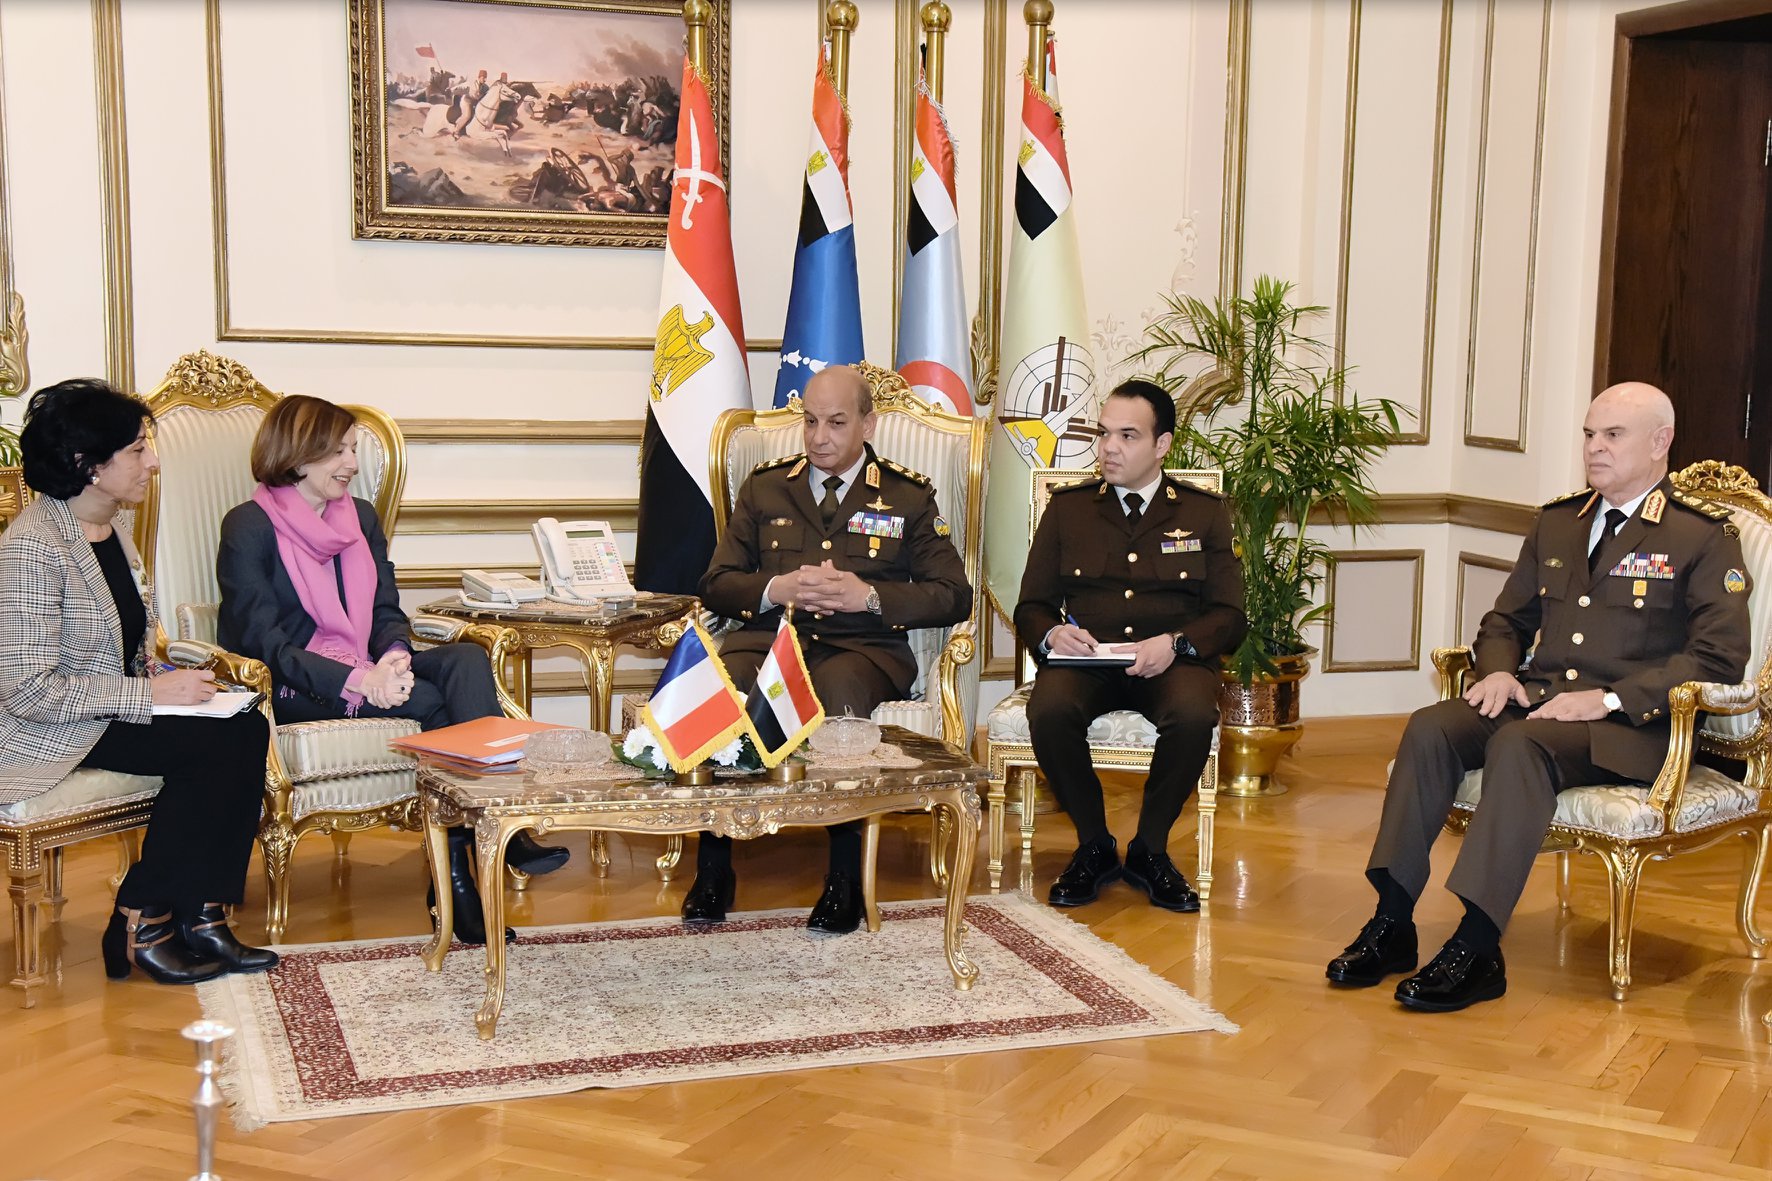   وزير الدفاع يلتقى وزيرة القوات المسلحة الفرنسية